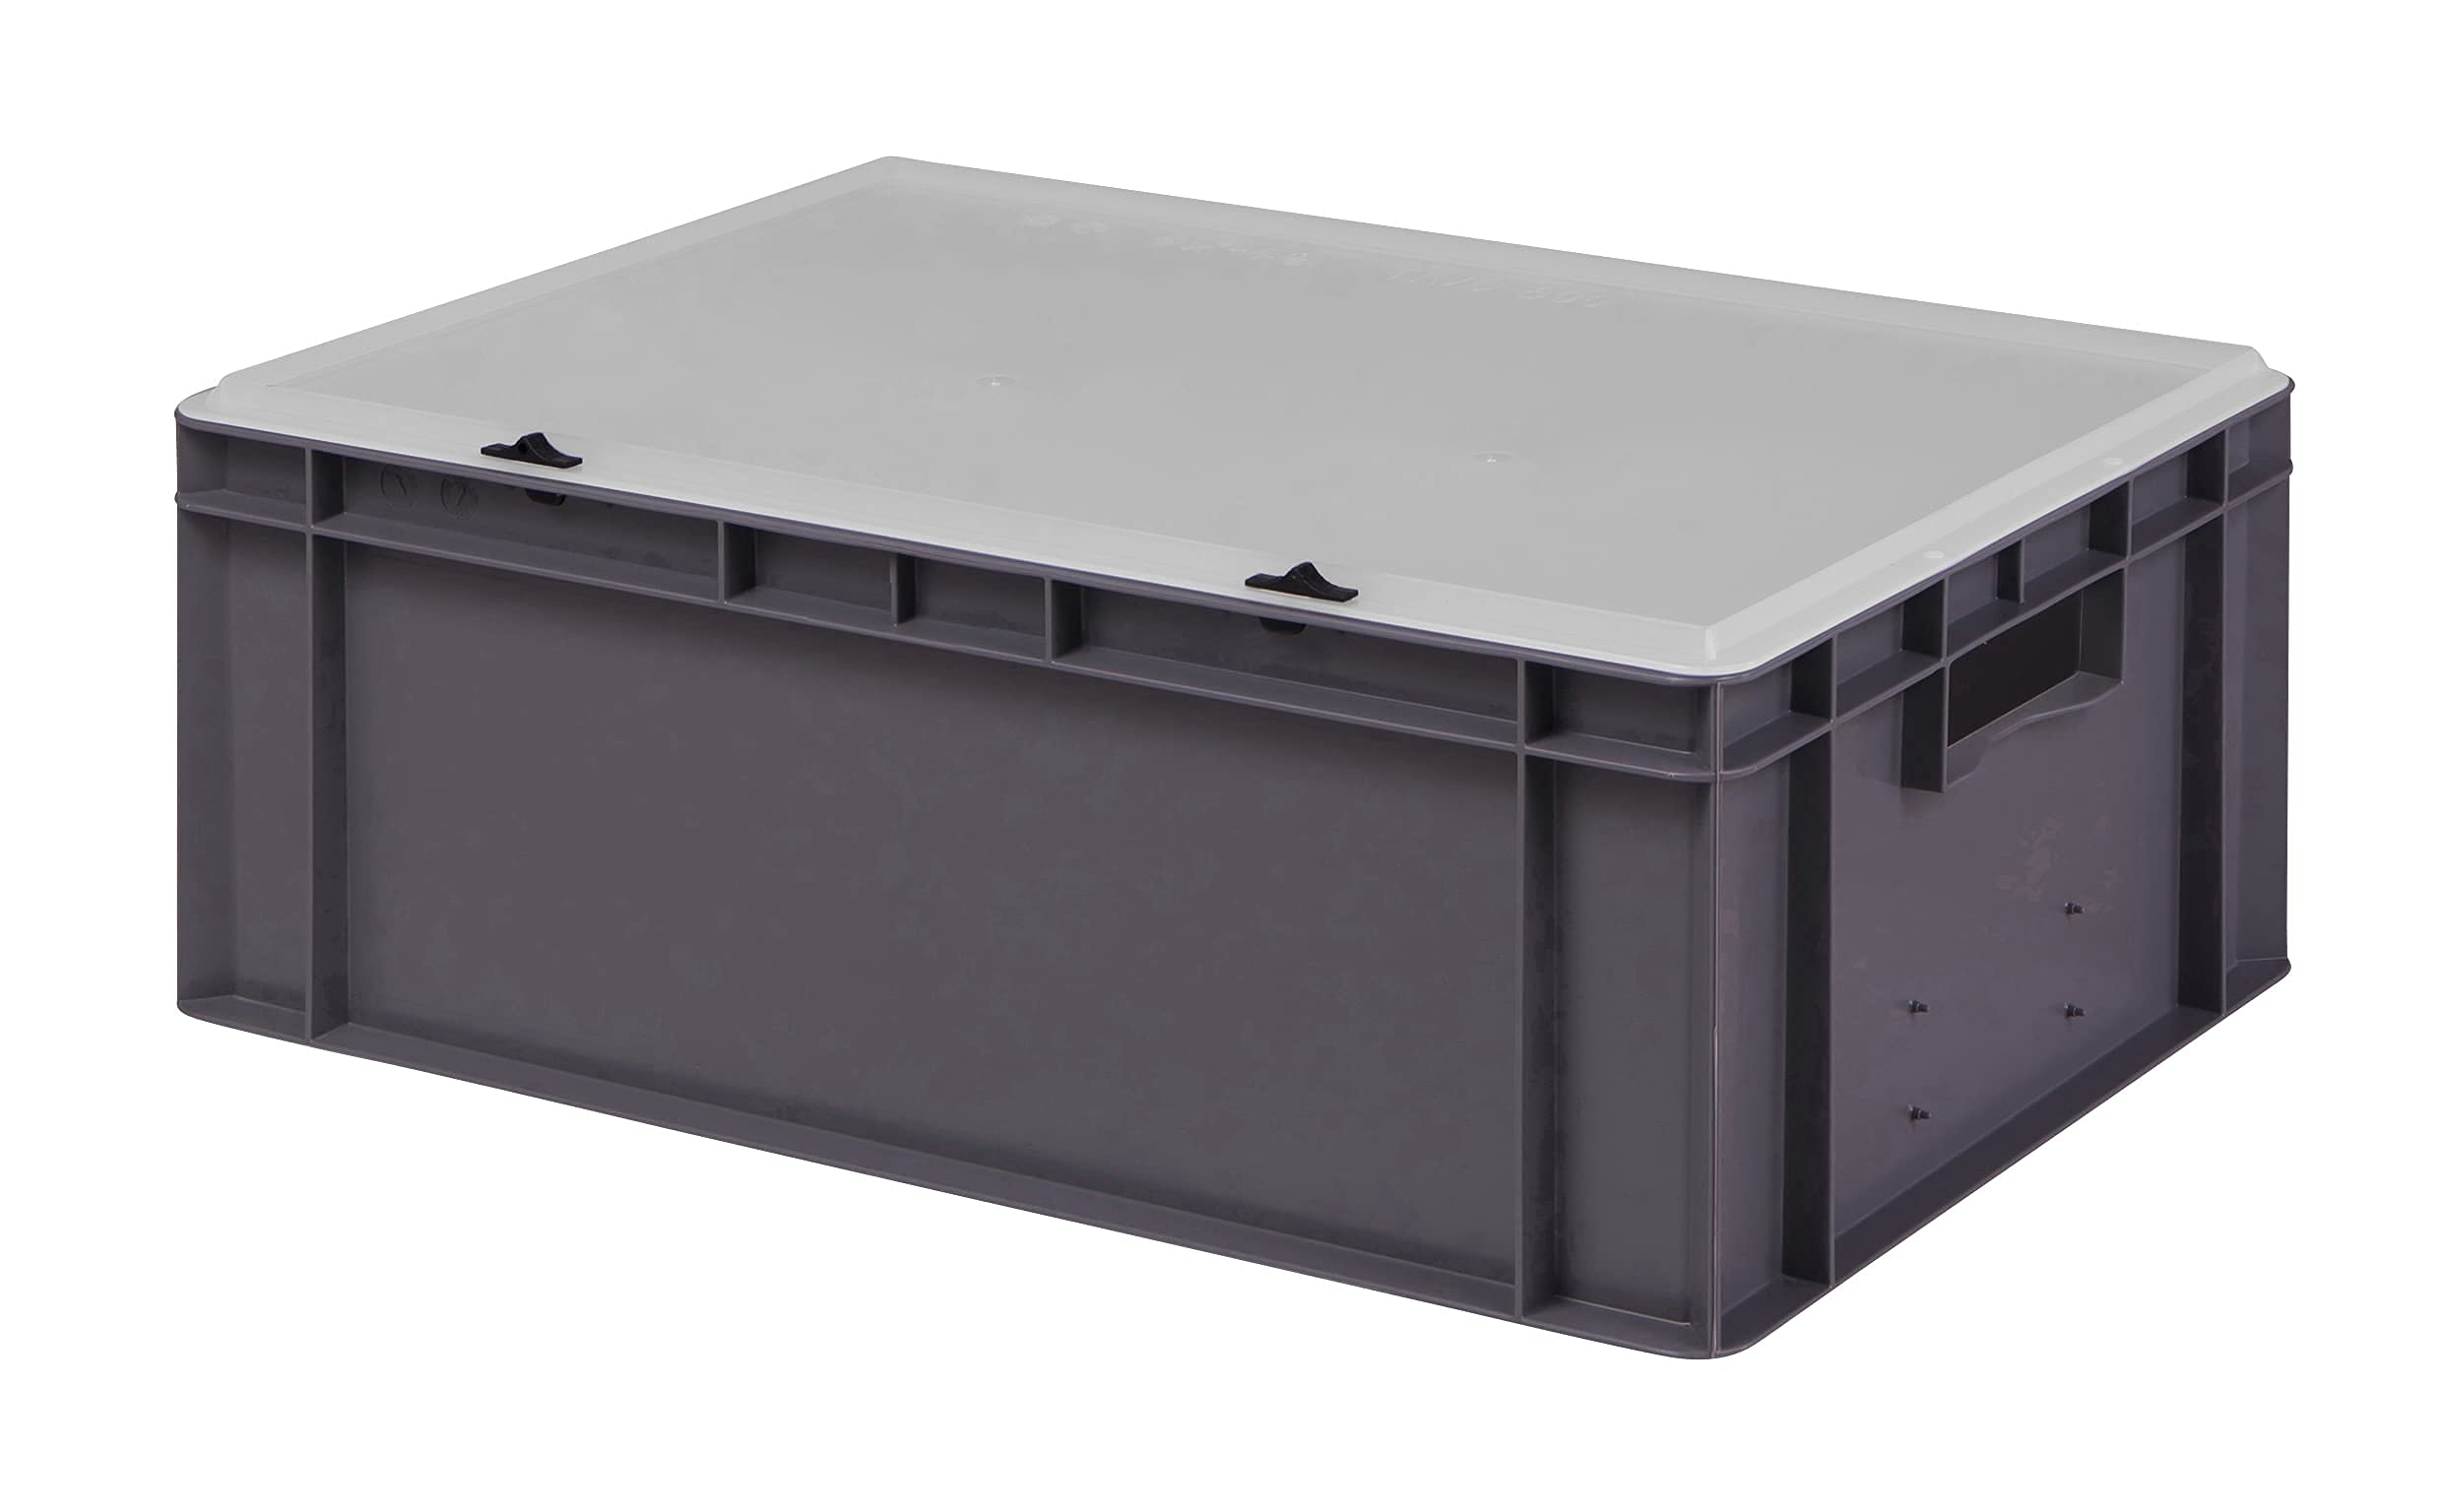 1a-TopStore Design Eurobox Stapelbox Lagerbehälter Kunststoffbox in 5 Farben und 16 Größen mit transparentem Deckel (matt) (grau, 60x40x22 cm)